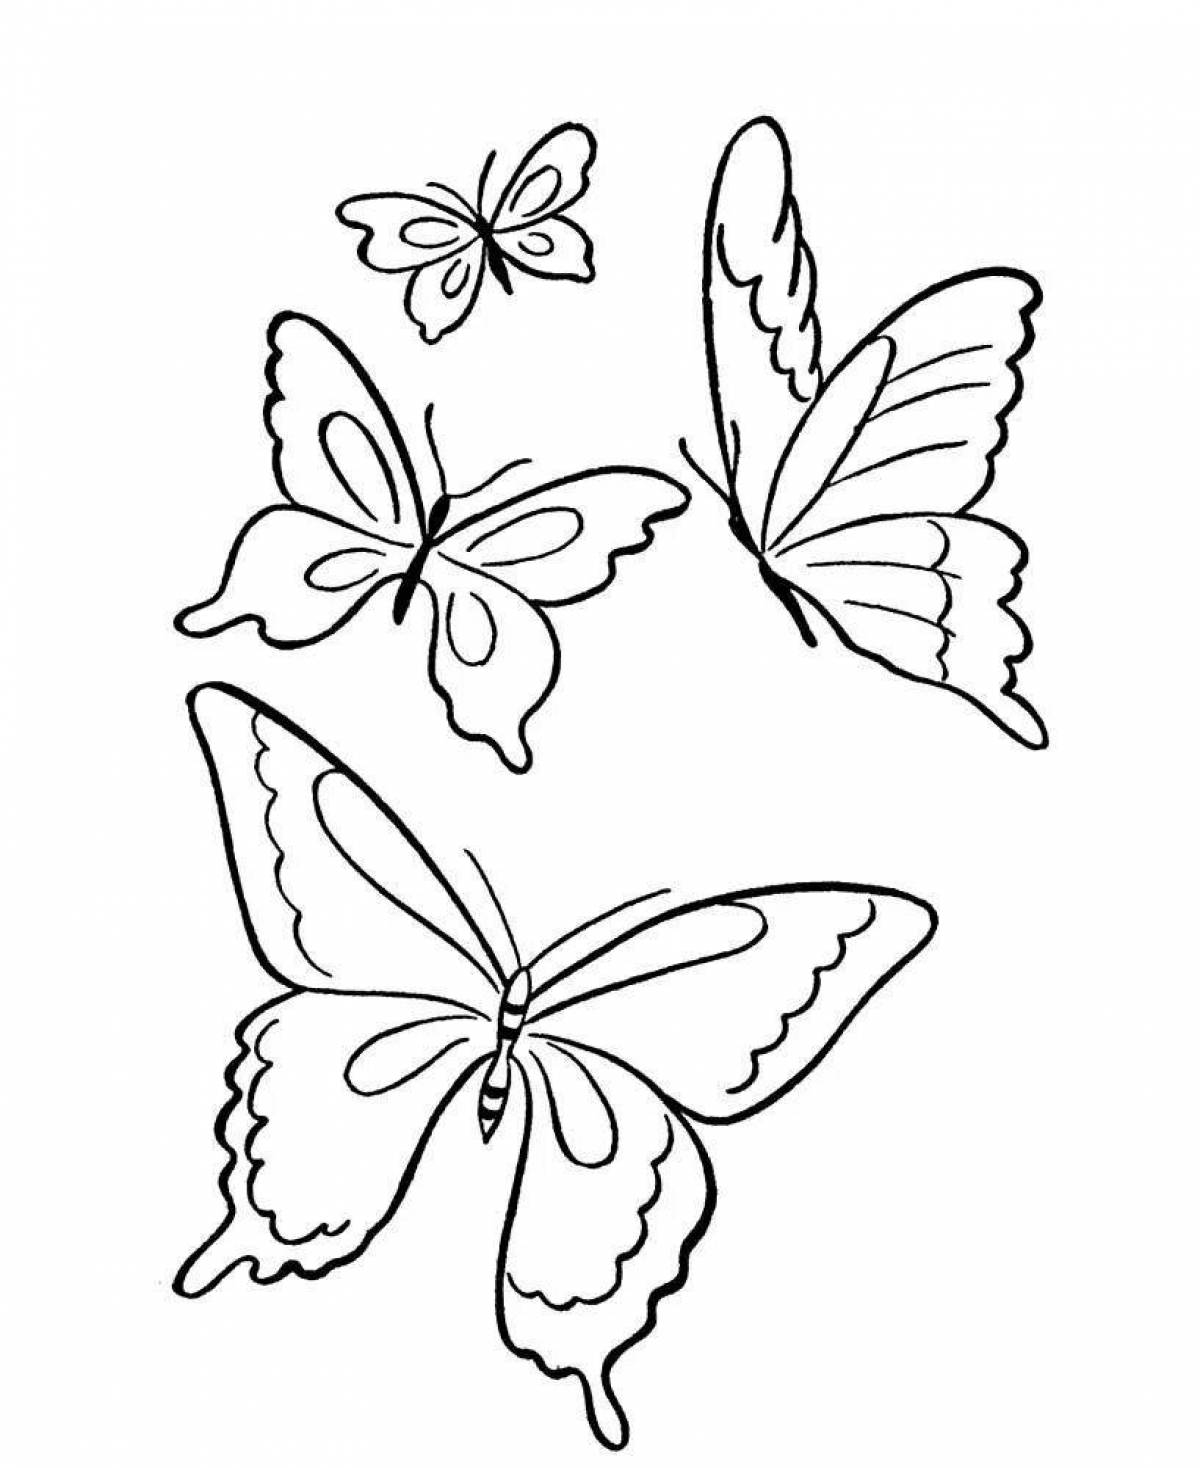 Stencil coloring joyful butterfly